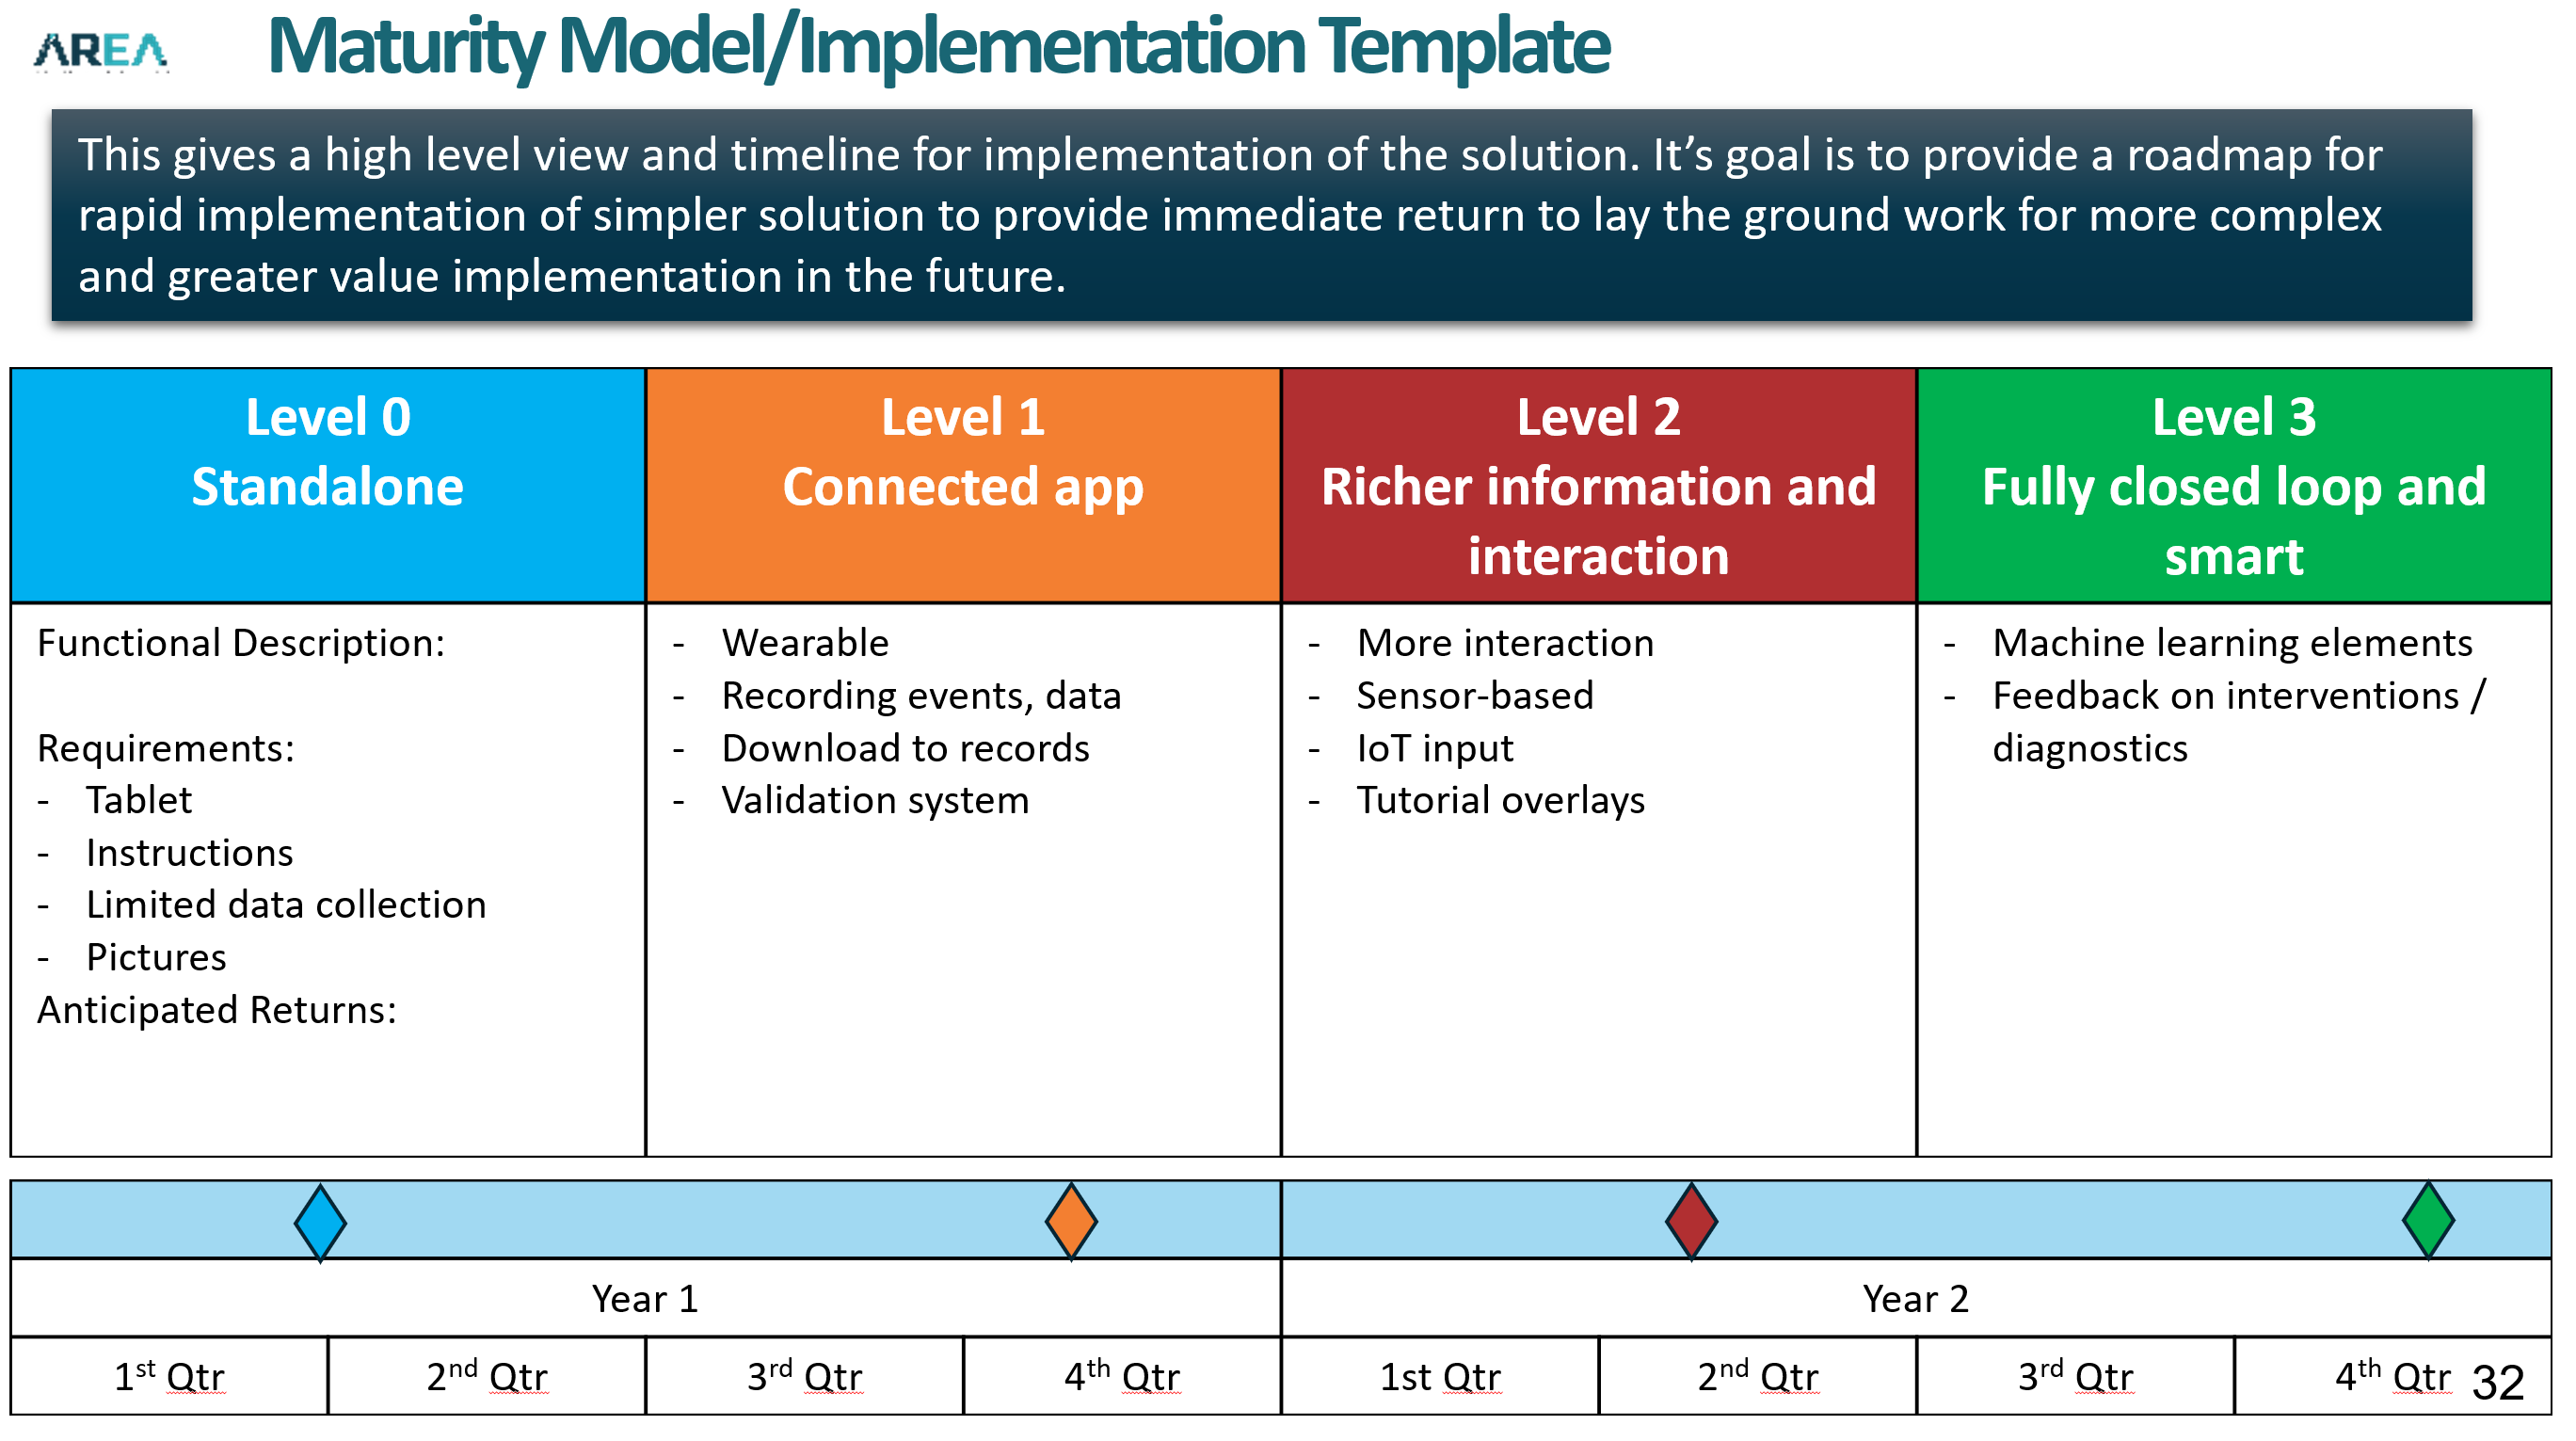 Maturity Model_Implementation Template AREA